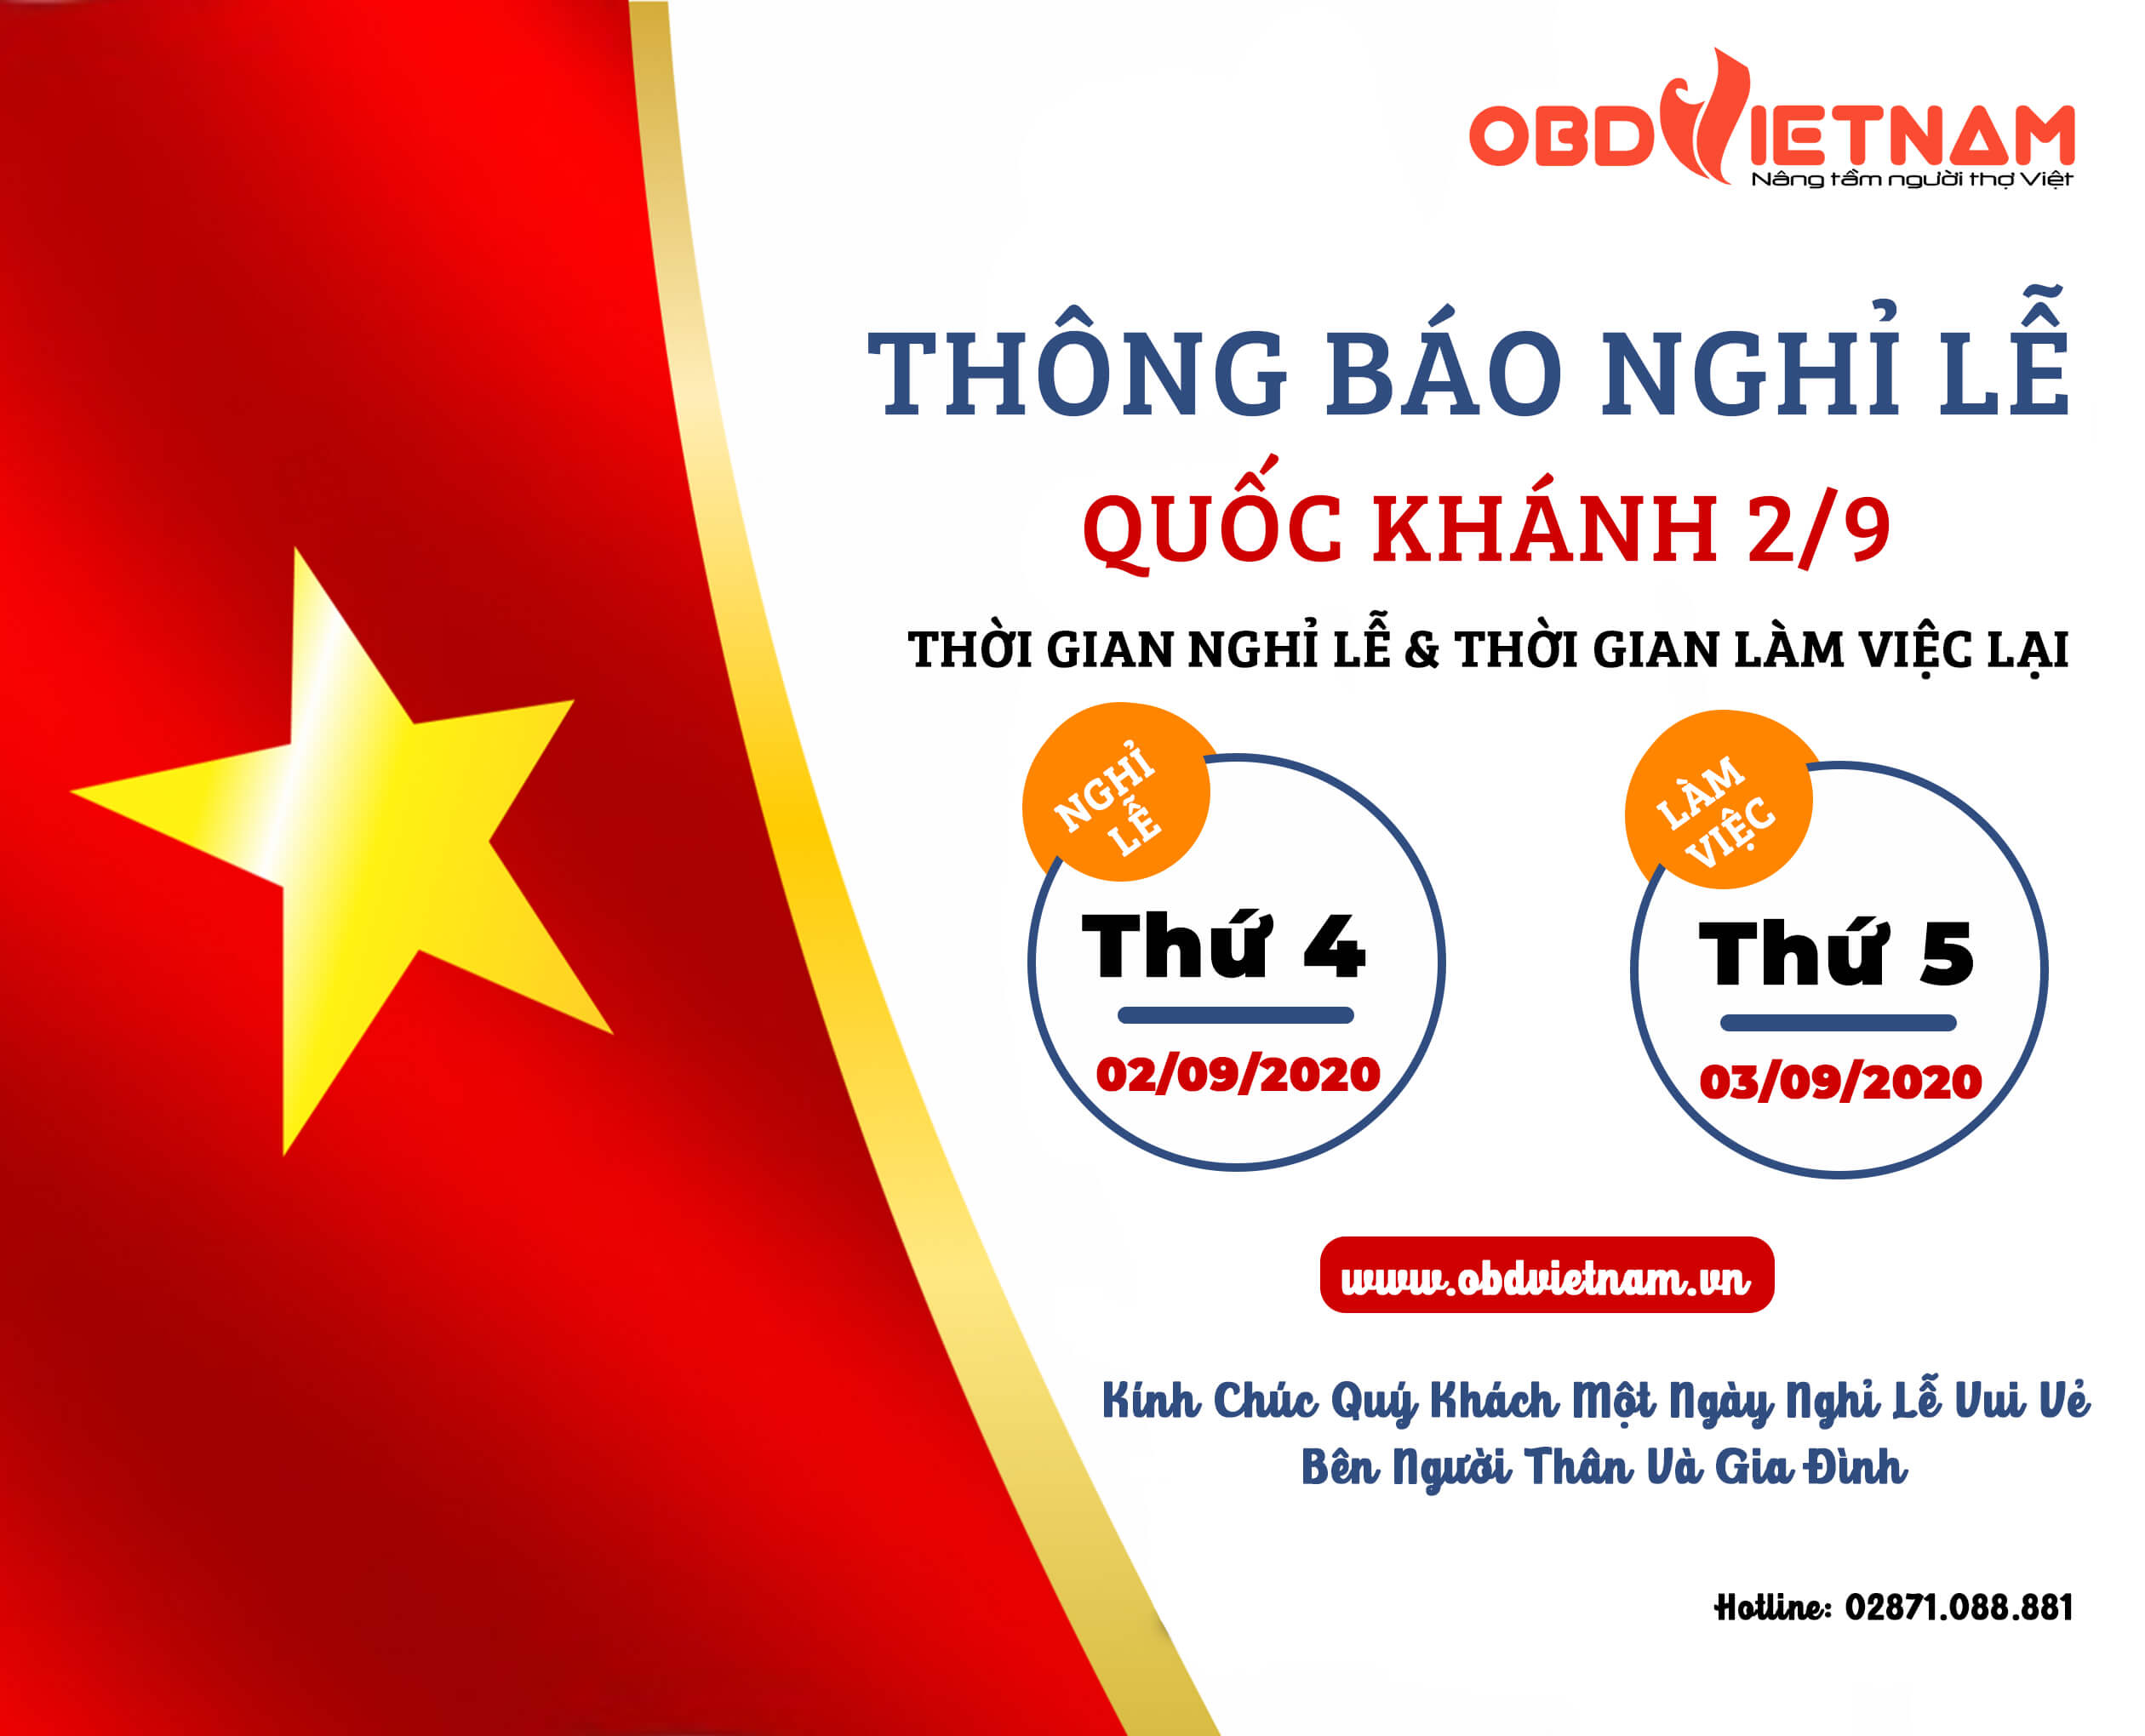 obdvietnam-thong-bao-nghi-le-2-9-2020